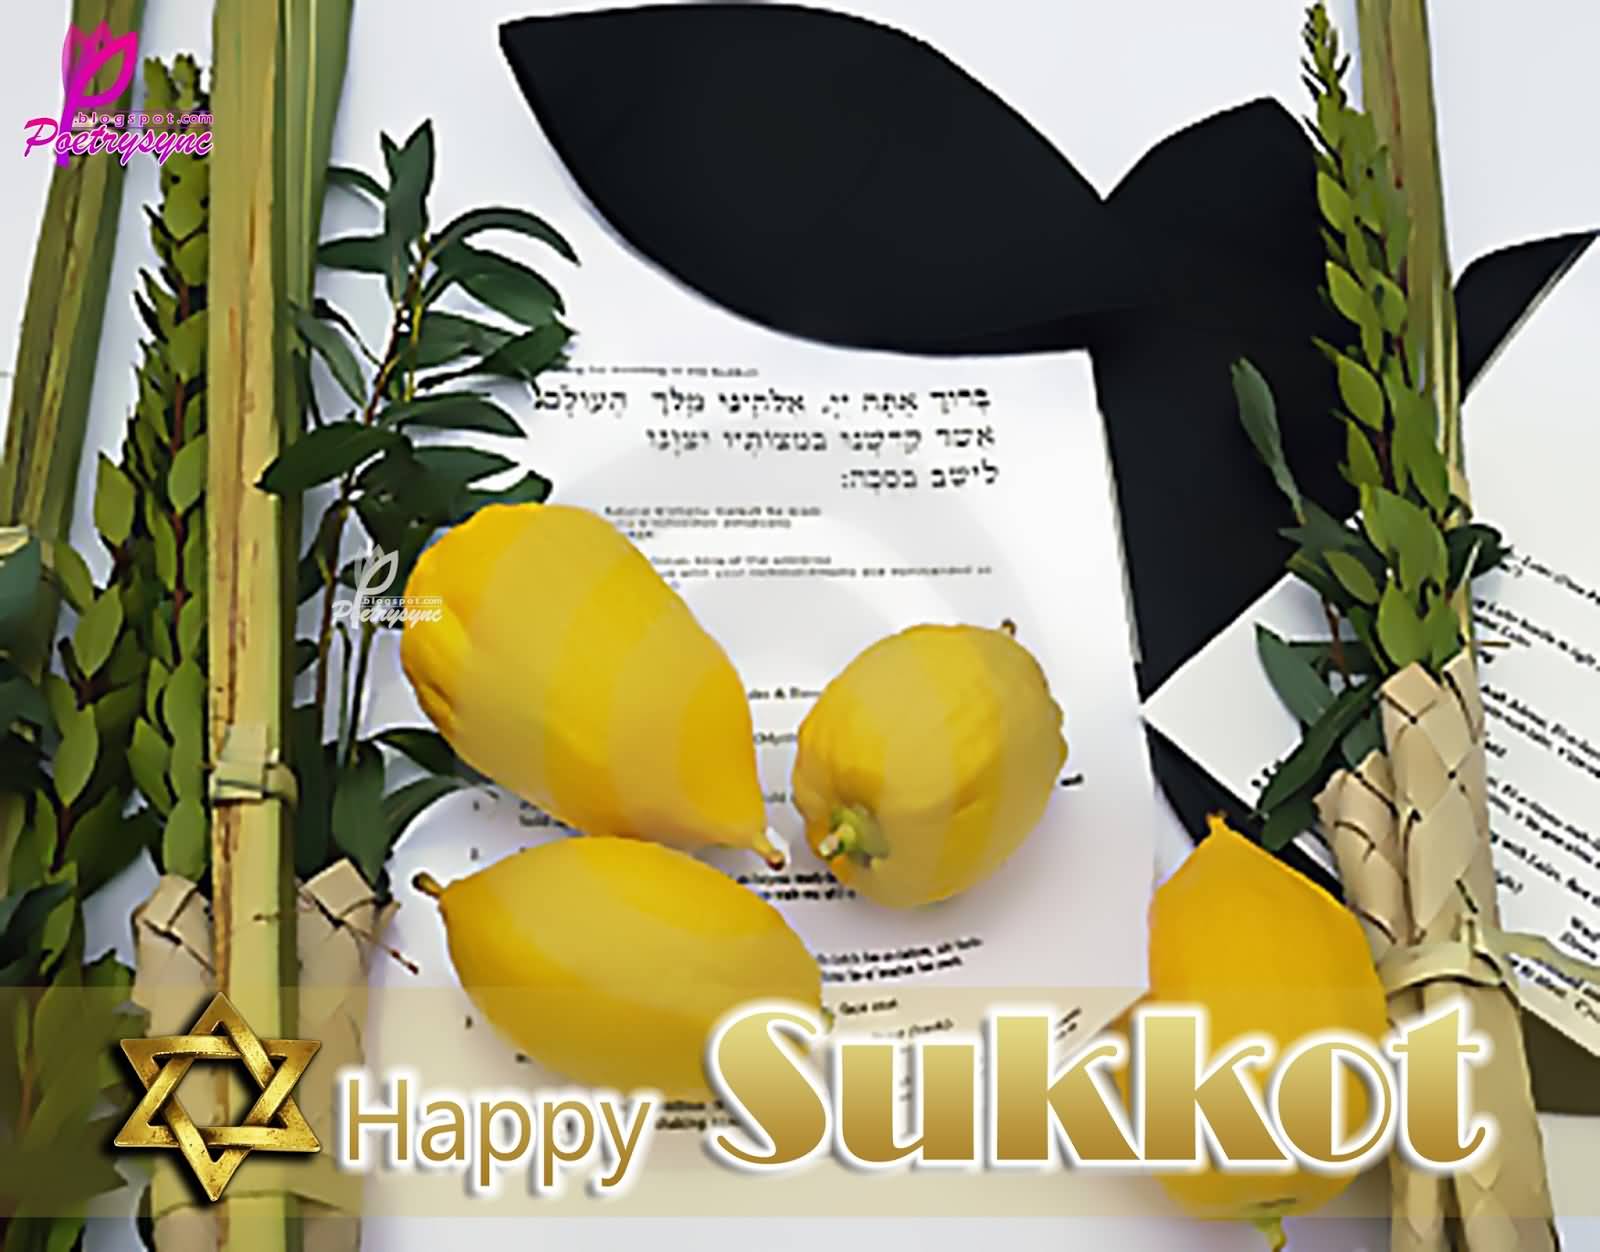 Happy Sukkot Wishes Image